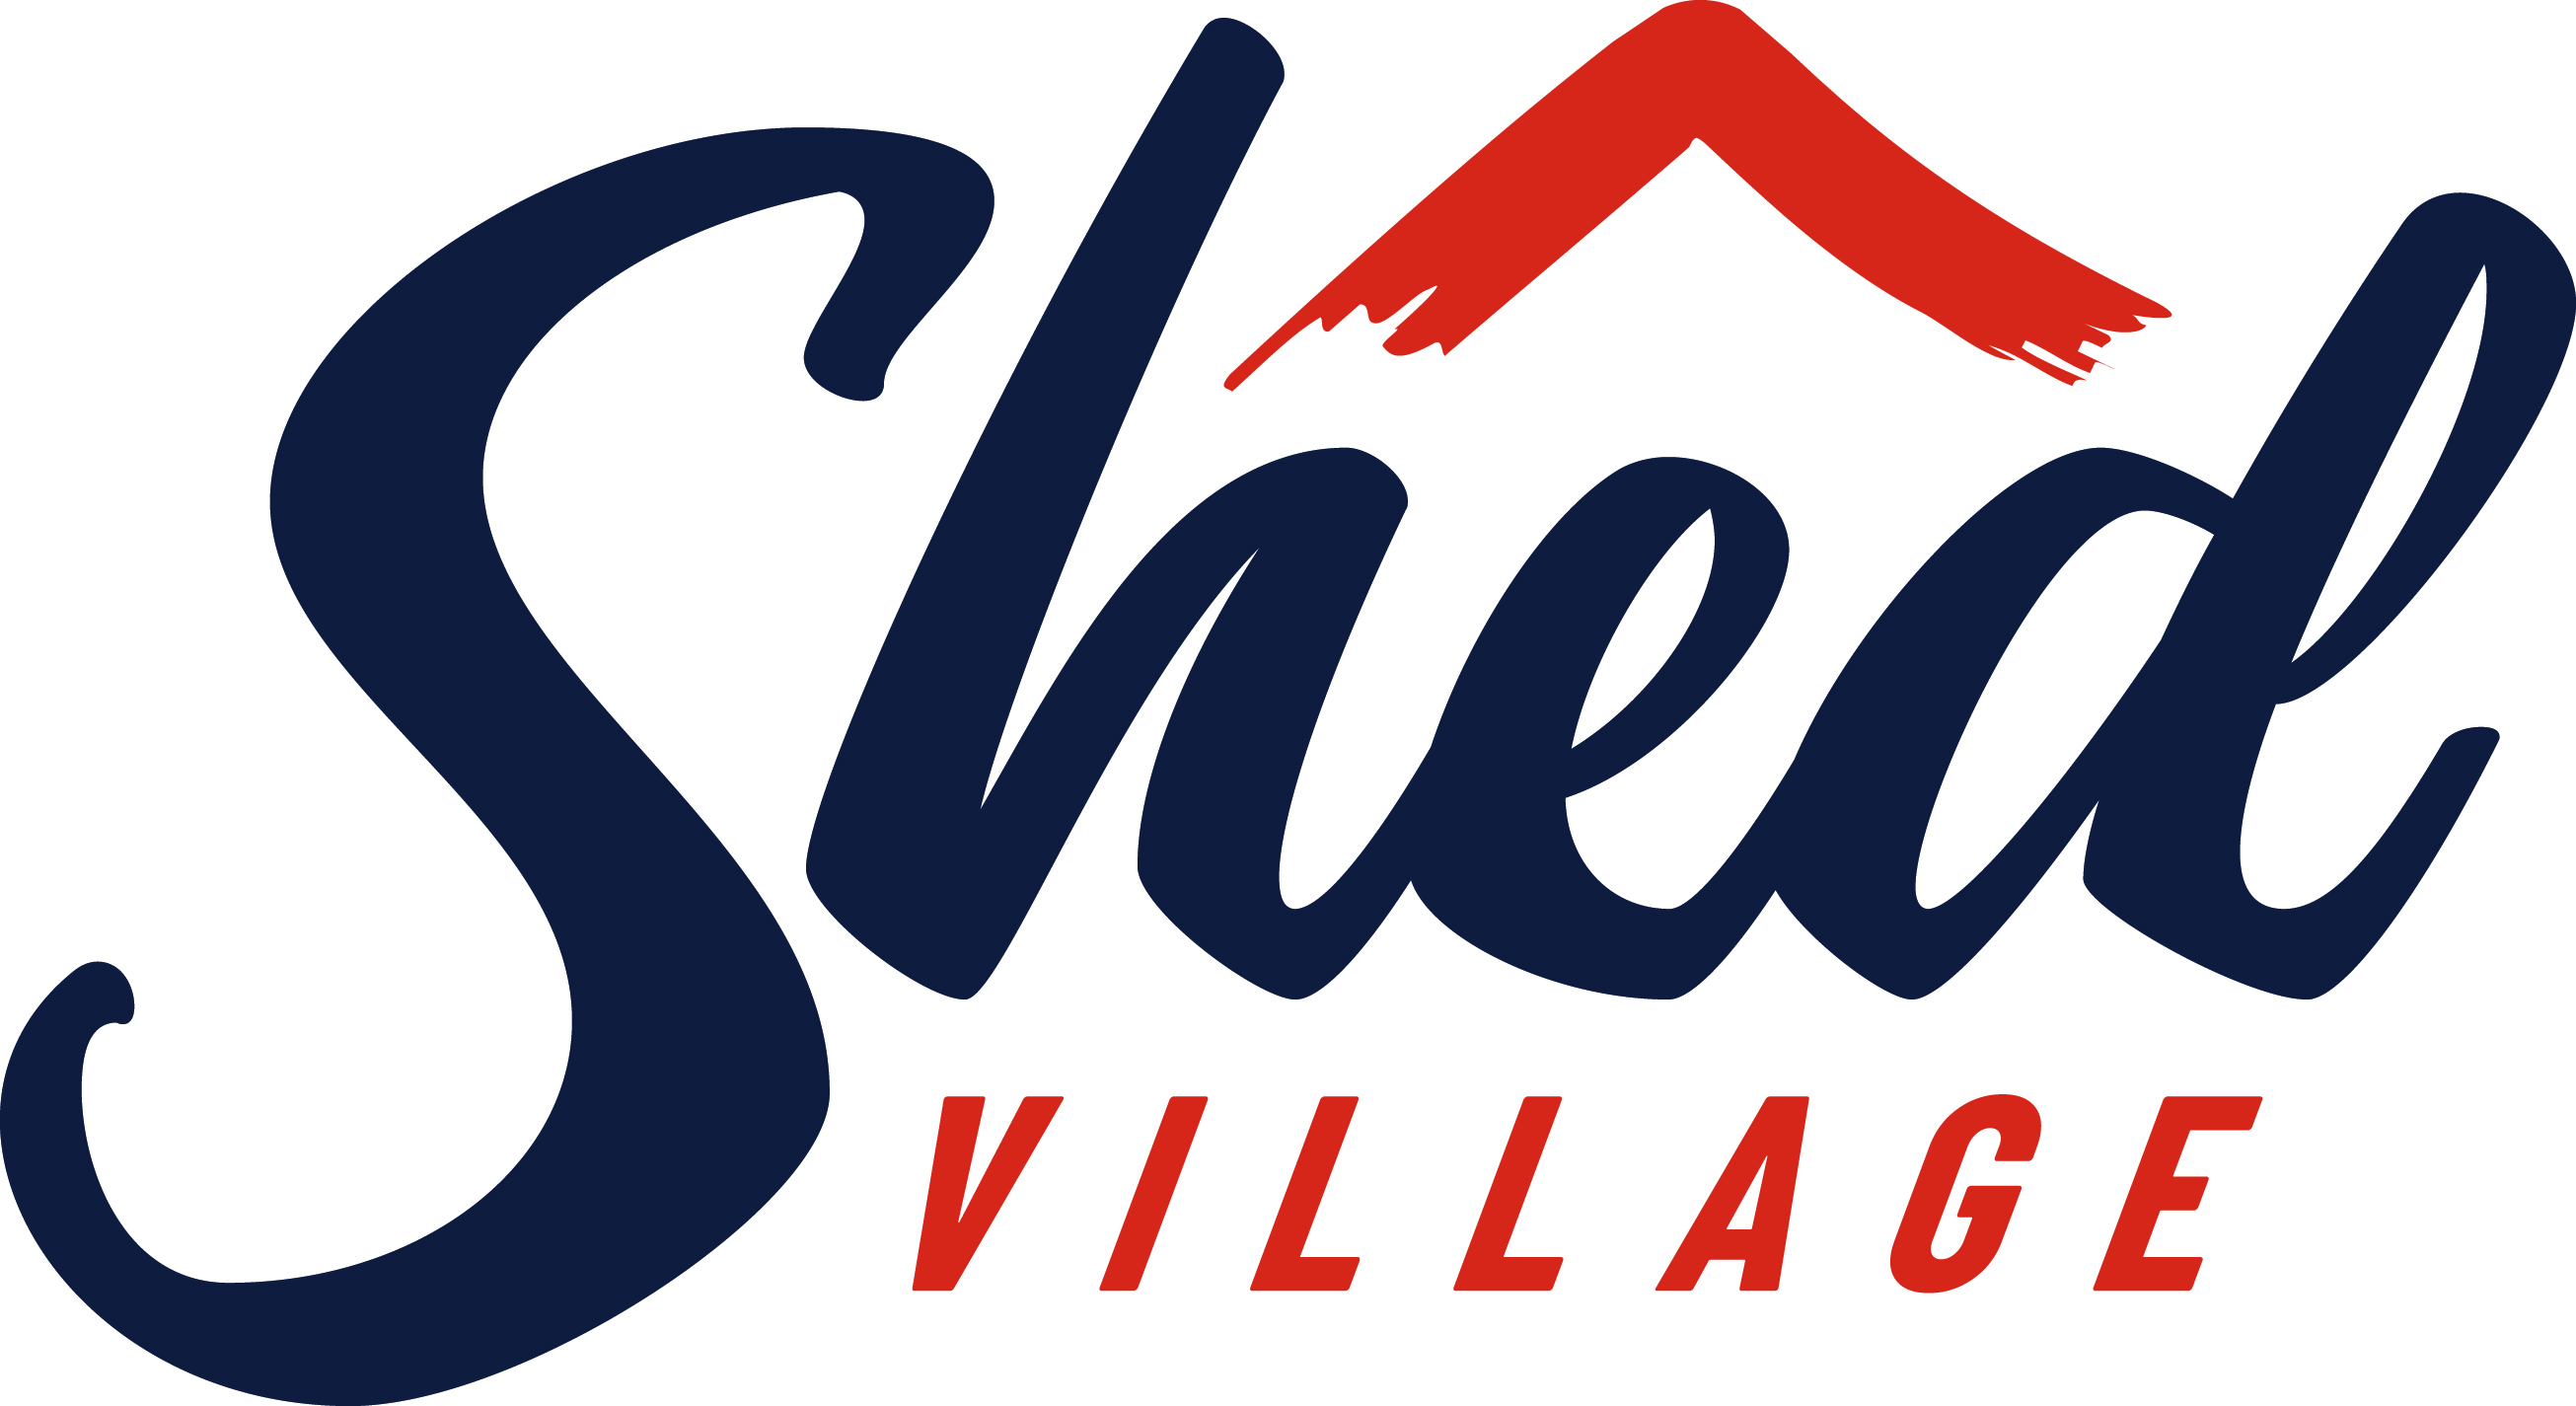 Shed Village Inc's logo